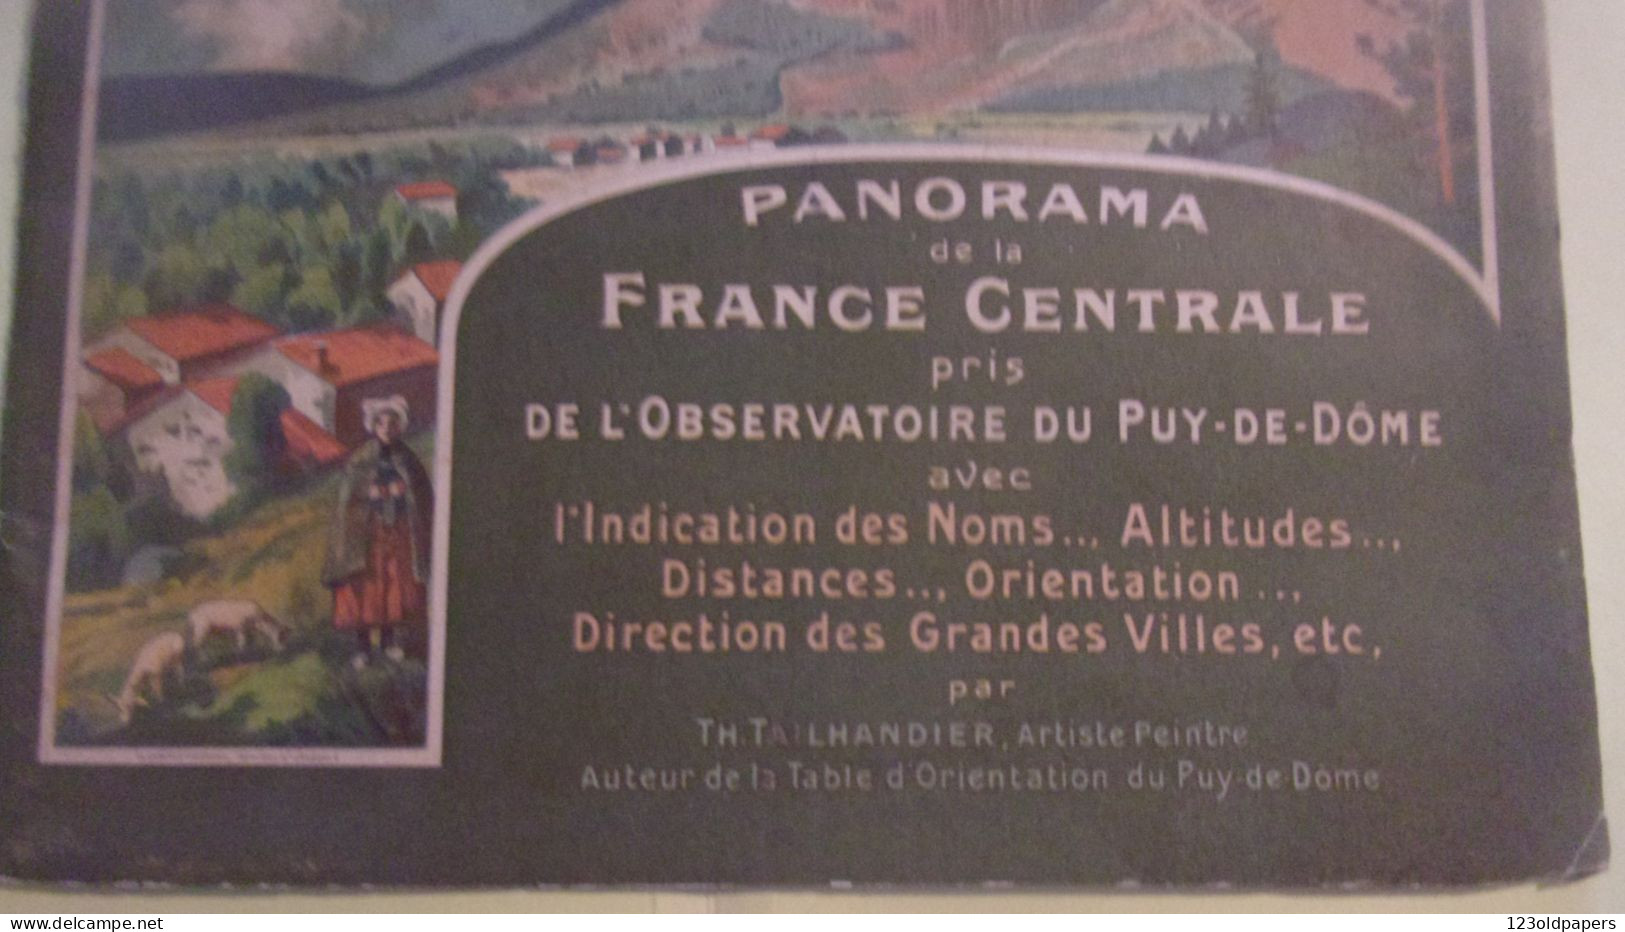 Panorama De La France Centrale Pris De L'observatoire Du Puy-de-Dôme, SUPERBE FRESQUE PAR TH TAILHANDIER ARTISTE PEINTRE - Auvergne